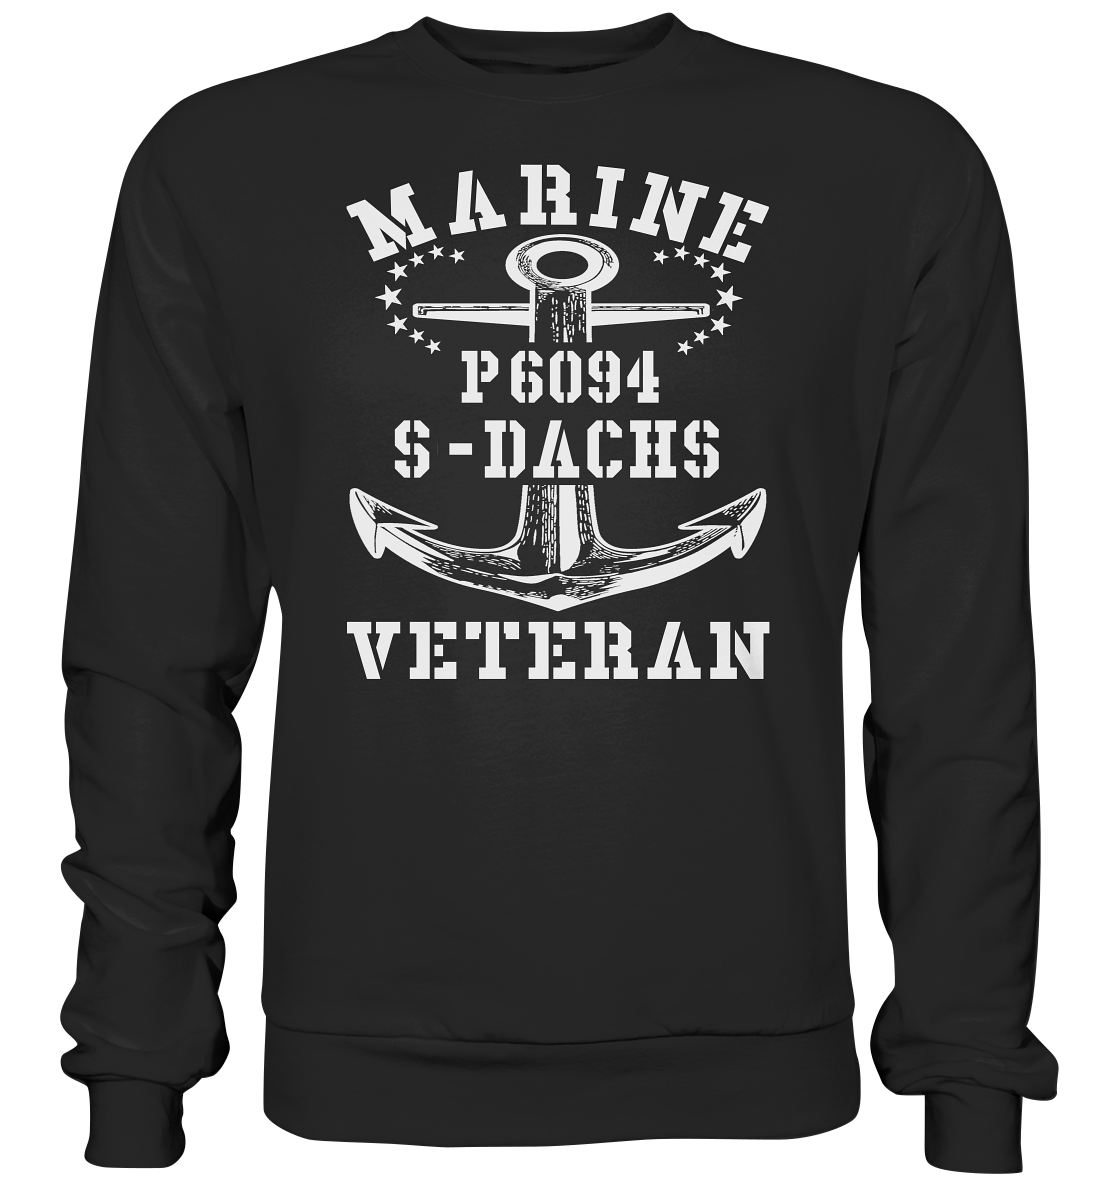 P6094 S-DACHS Marine Veteran - Premium Sweatshirt